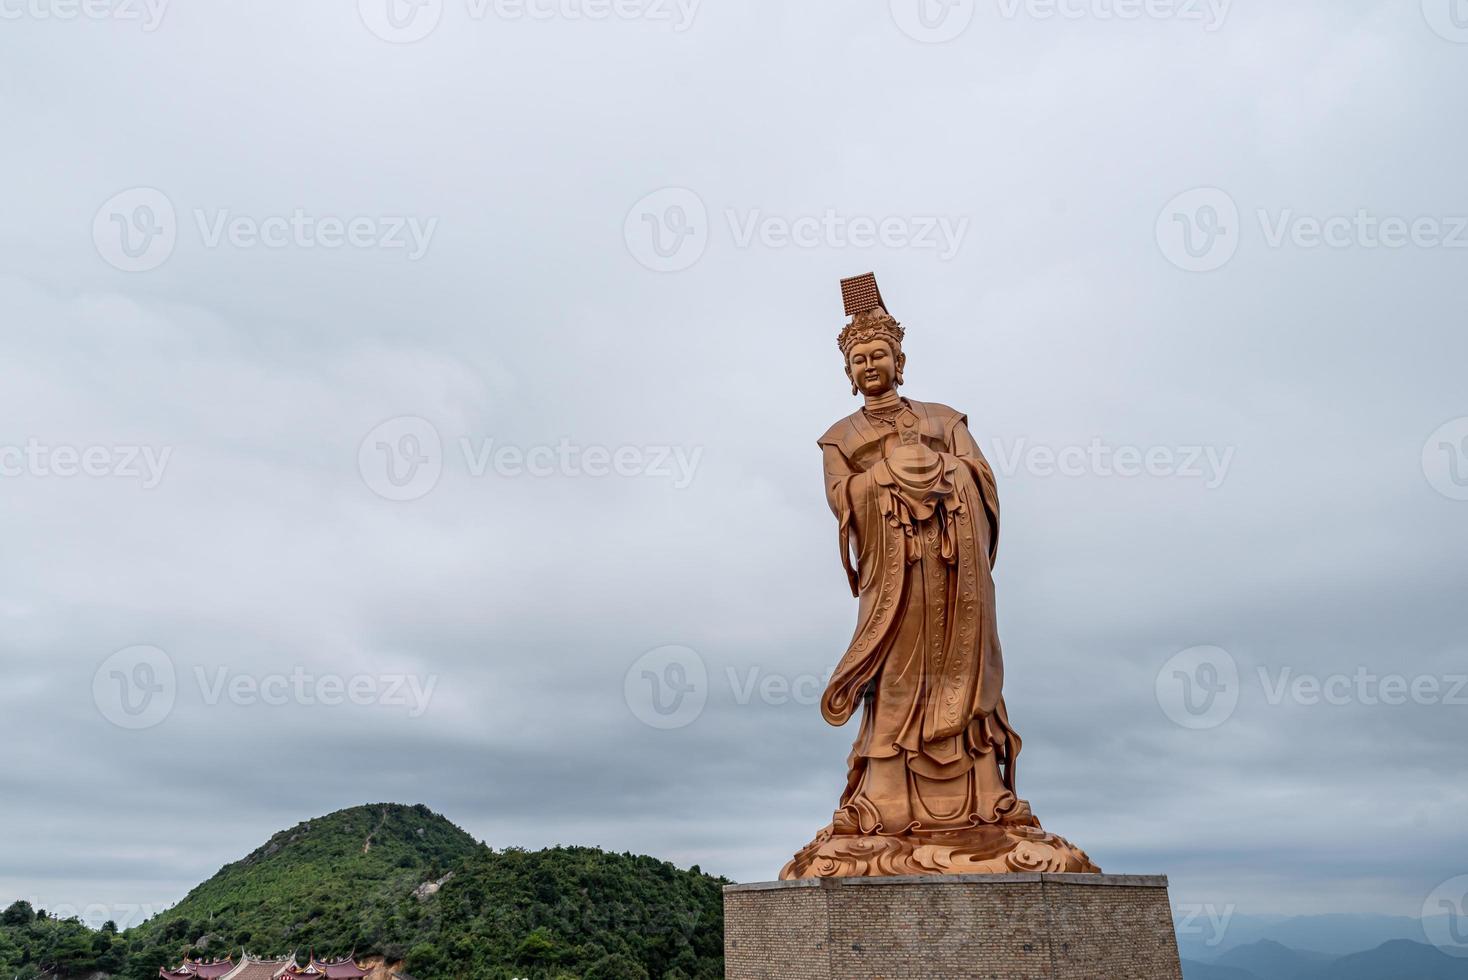 bronsstatyn av den kinesiska religiösa gudinnan i grumligt väder foto